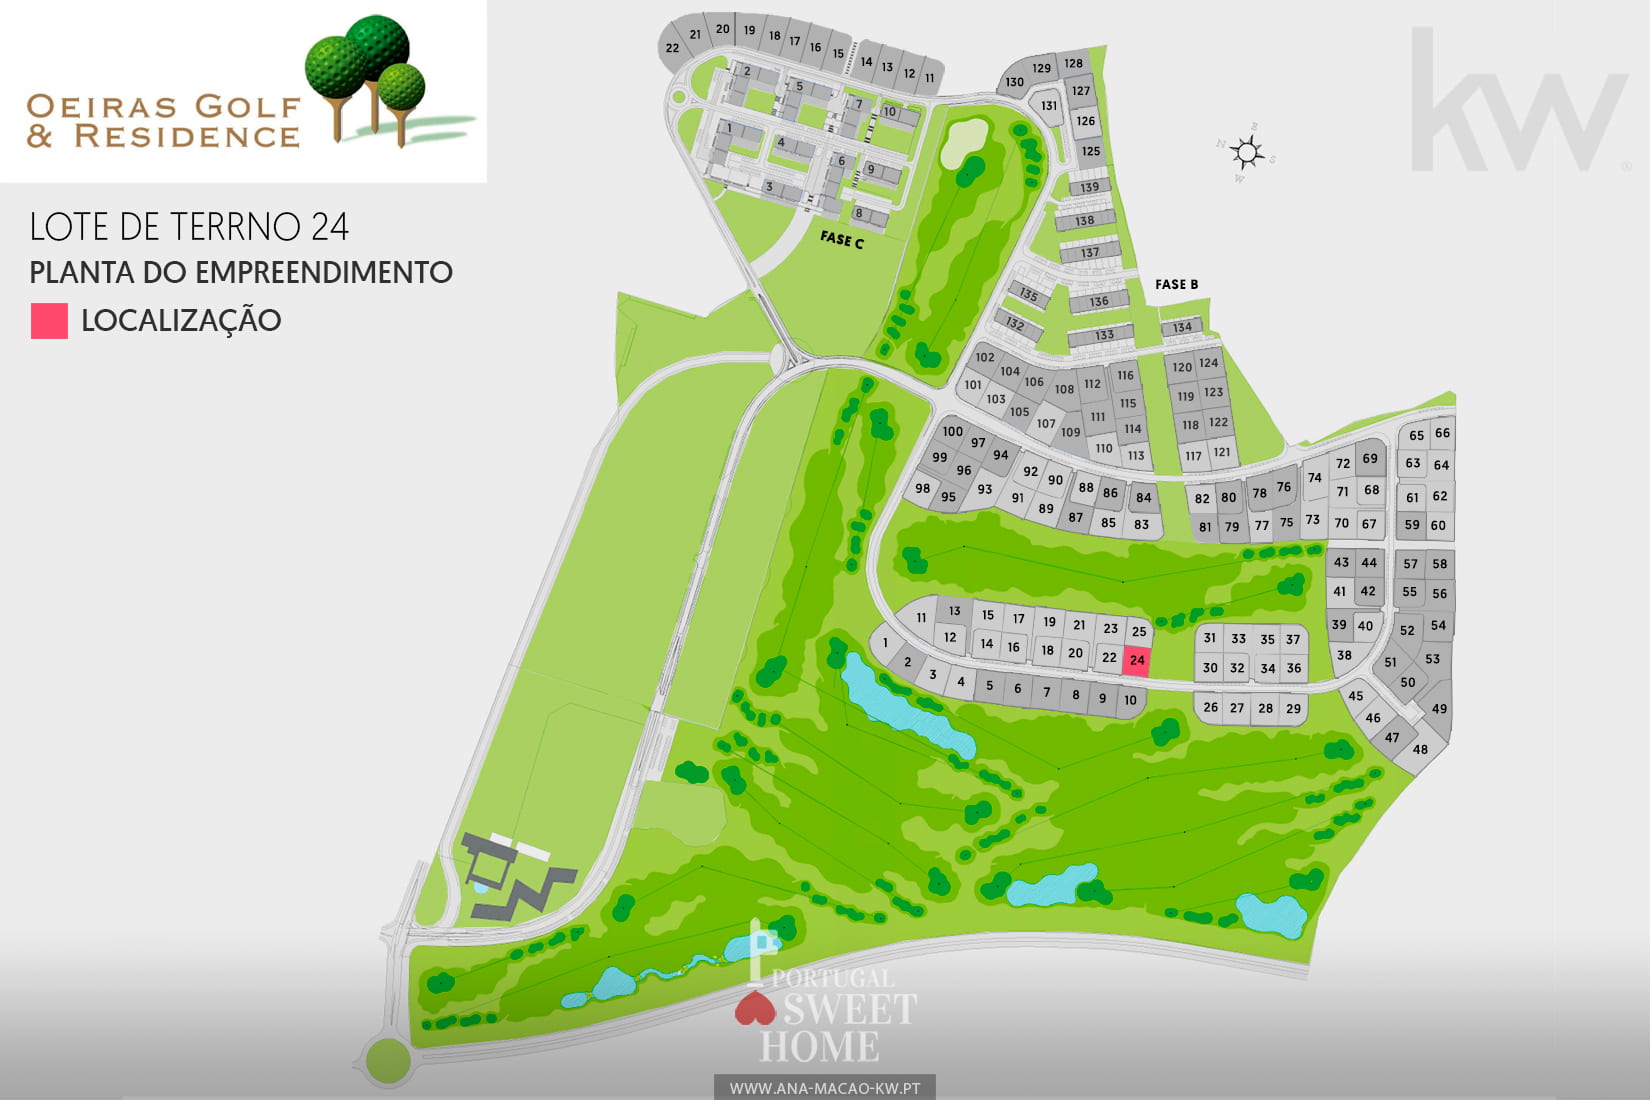 Oeiras Golf & Residence development map